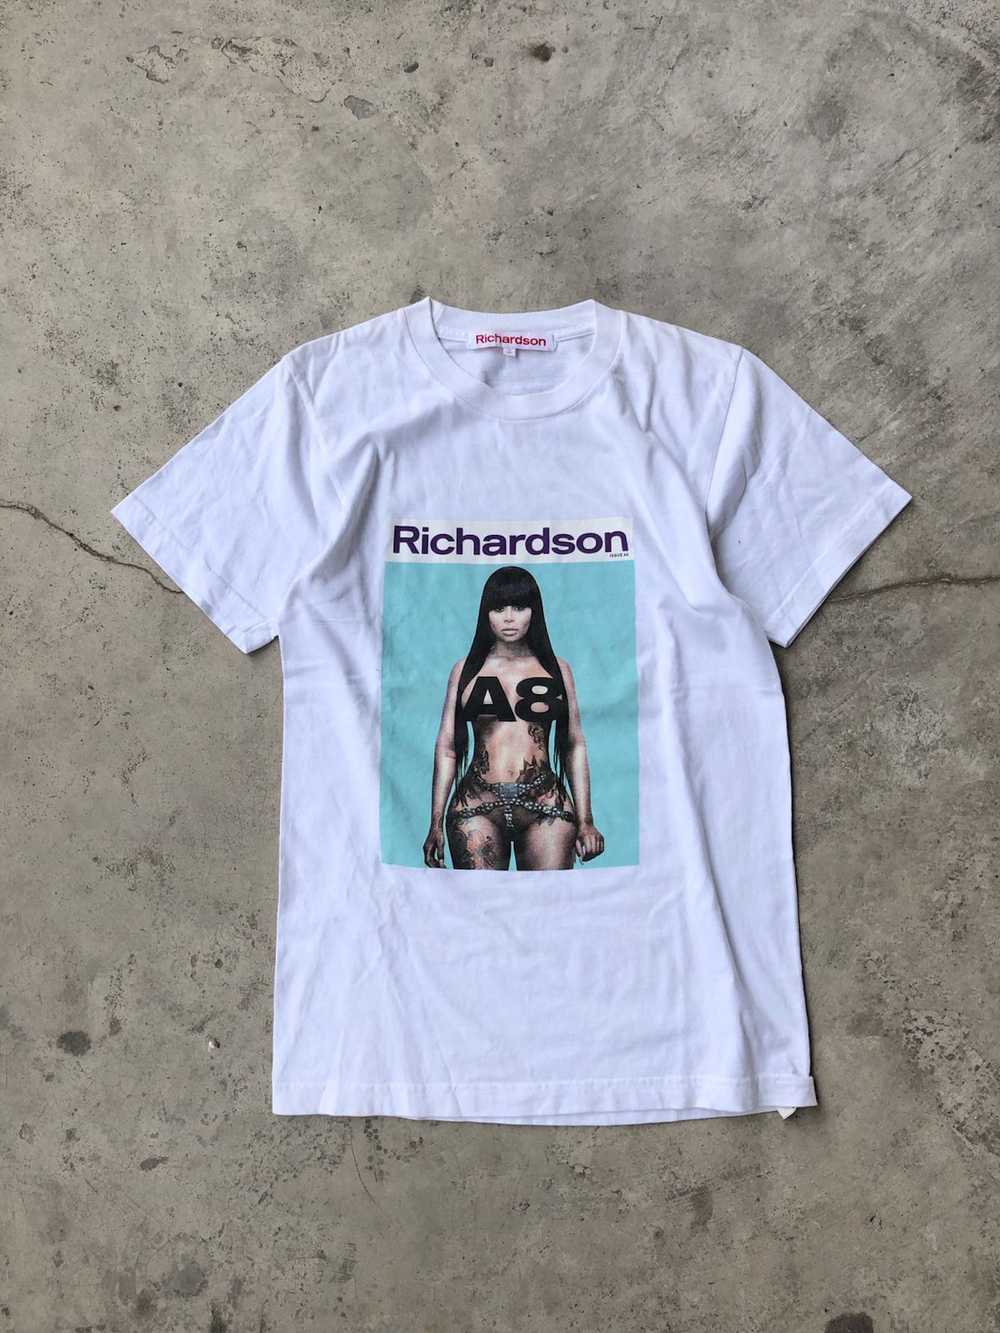 Richardson × Streetwear Richardson A8 Blac Chyna - image 1